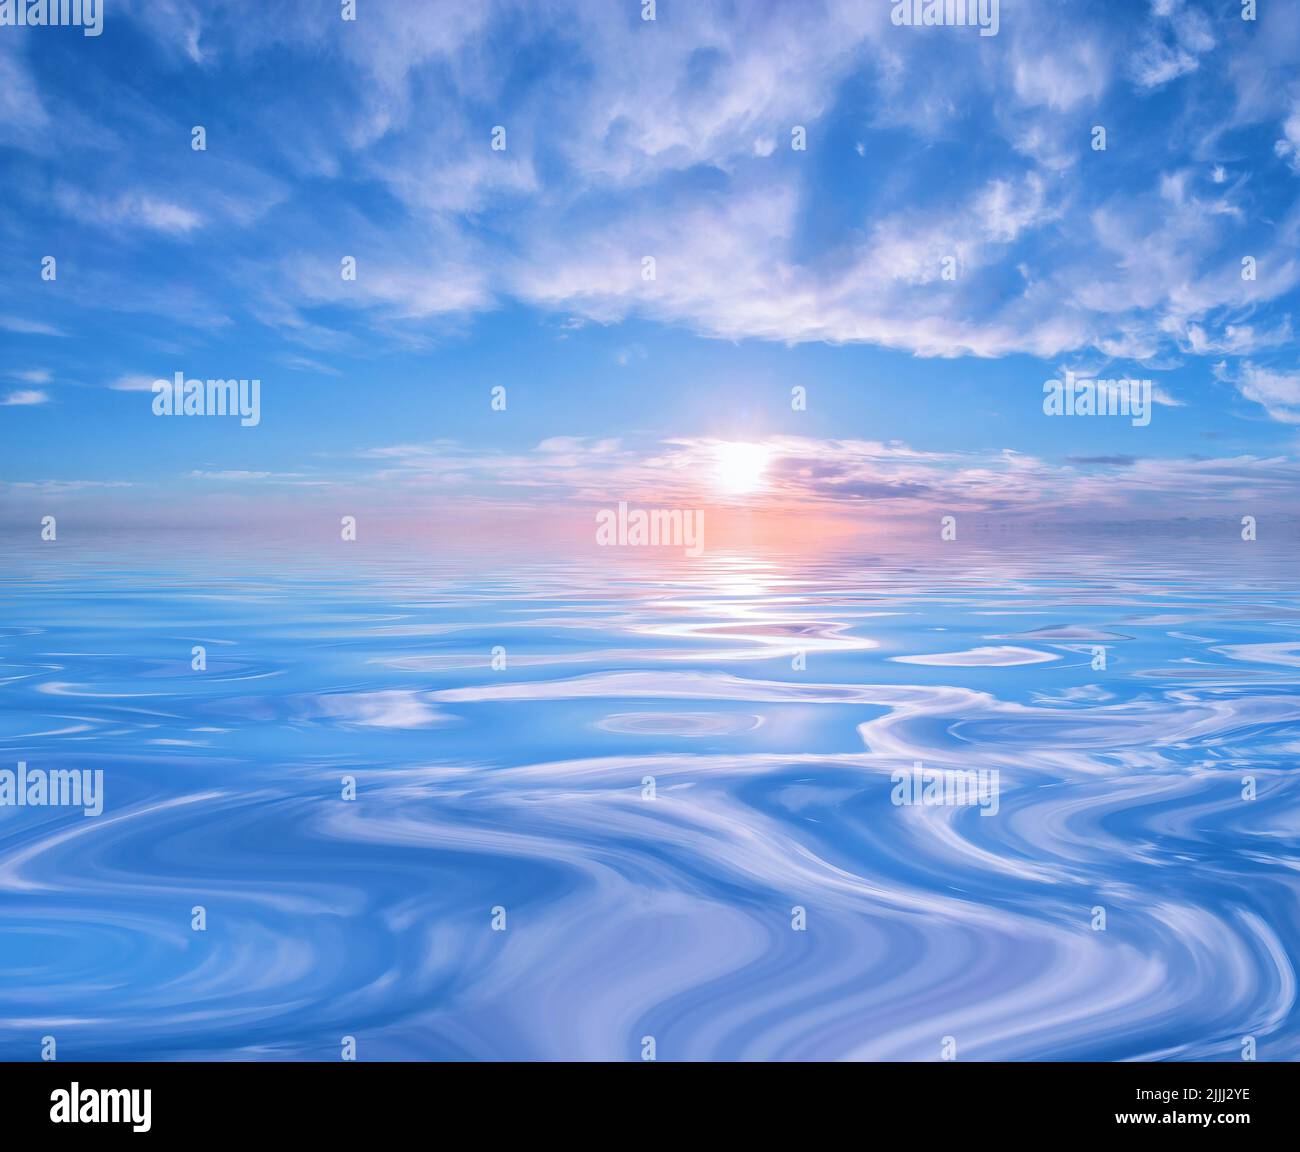 Kühler Sonnenuntergang oder Sonnenaufgang, der sich in ruhigem Wasser widerspiegelt Stockfoto